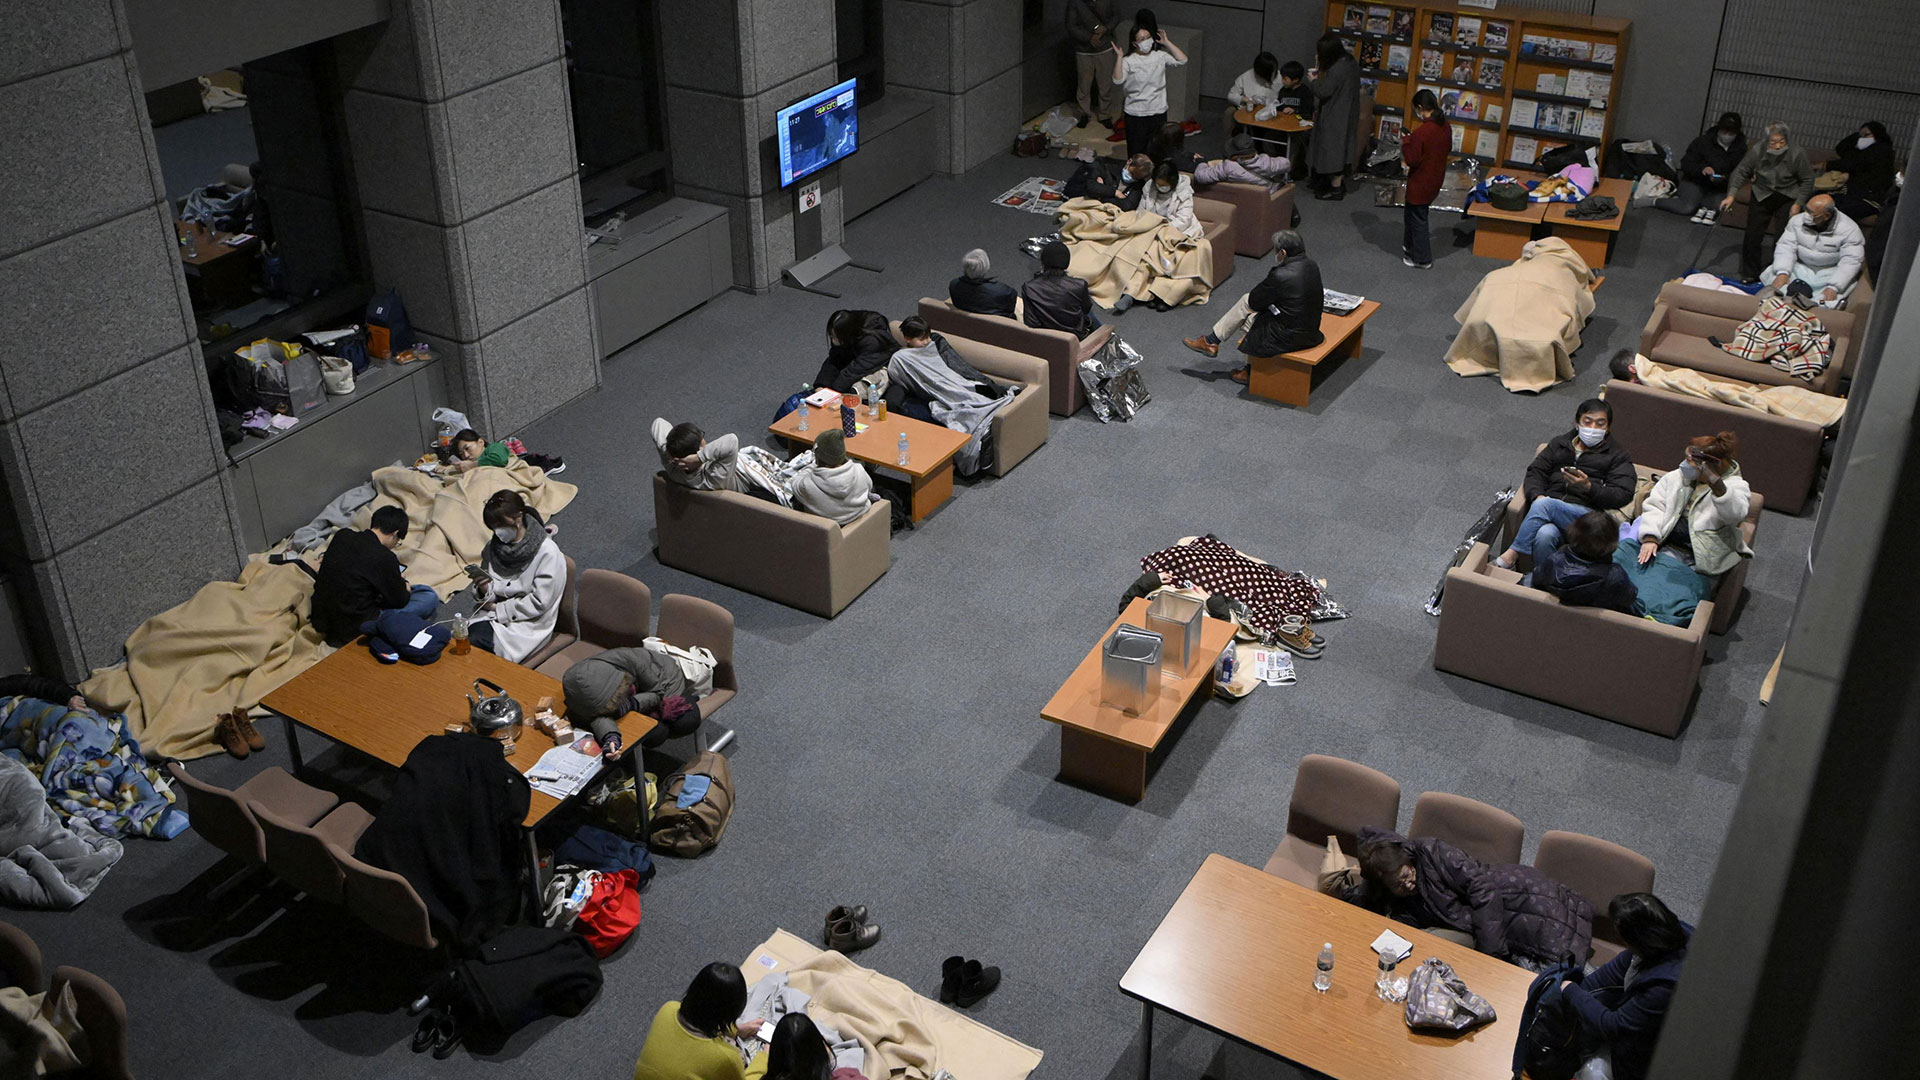 Ιαπωνία: Εικόνες μετά τον σεισμό 7,6 Ρίχτερ – Καταστροφές και εκκενώσεις περιοχών-12